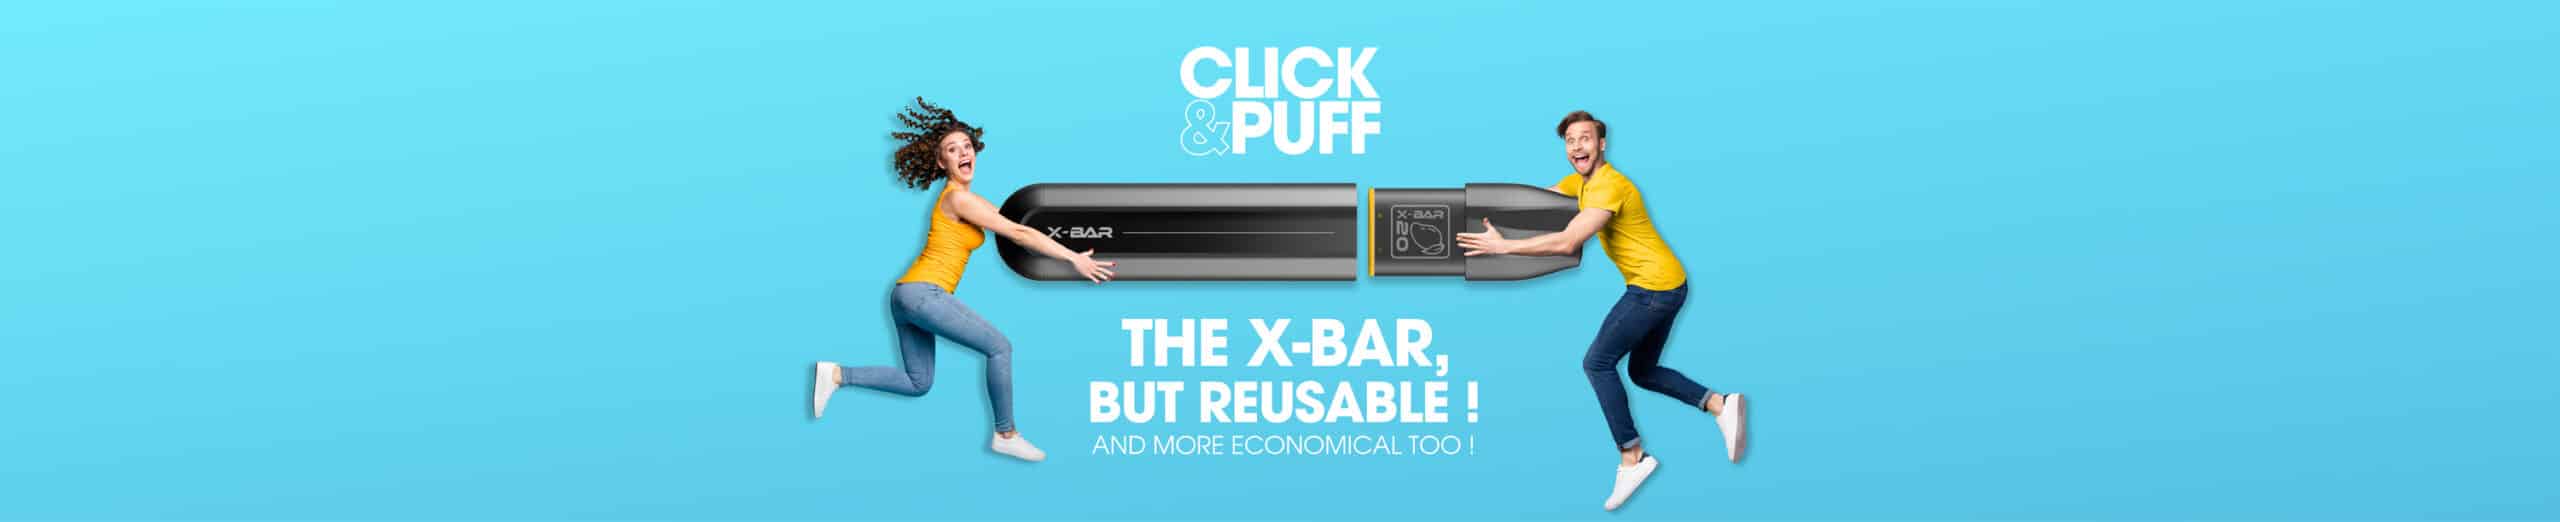 X-Bar Click&Puff